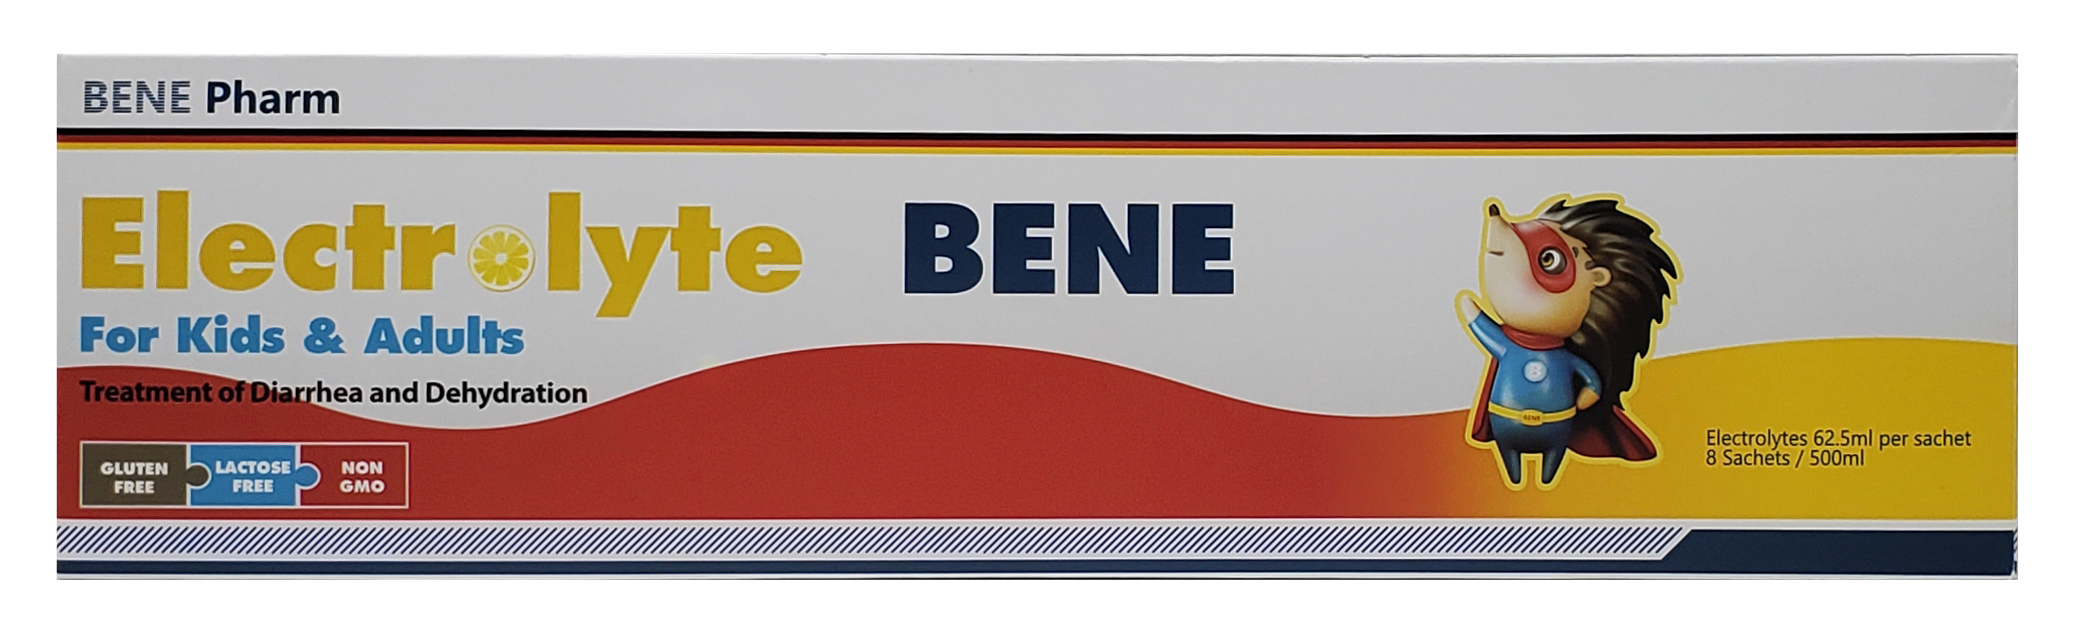 ელექტროლიტი ბენე / Electrolyte BENE